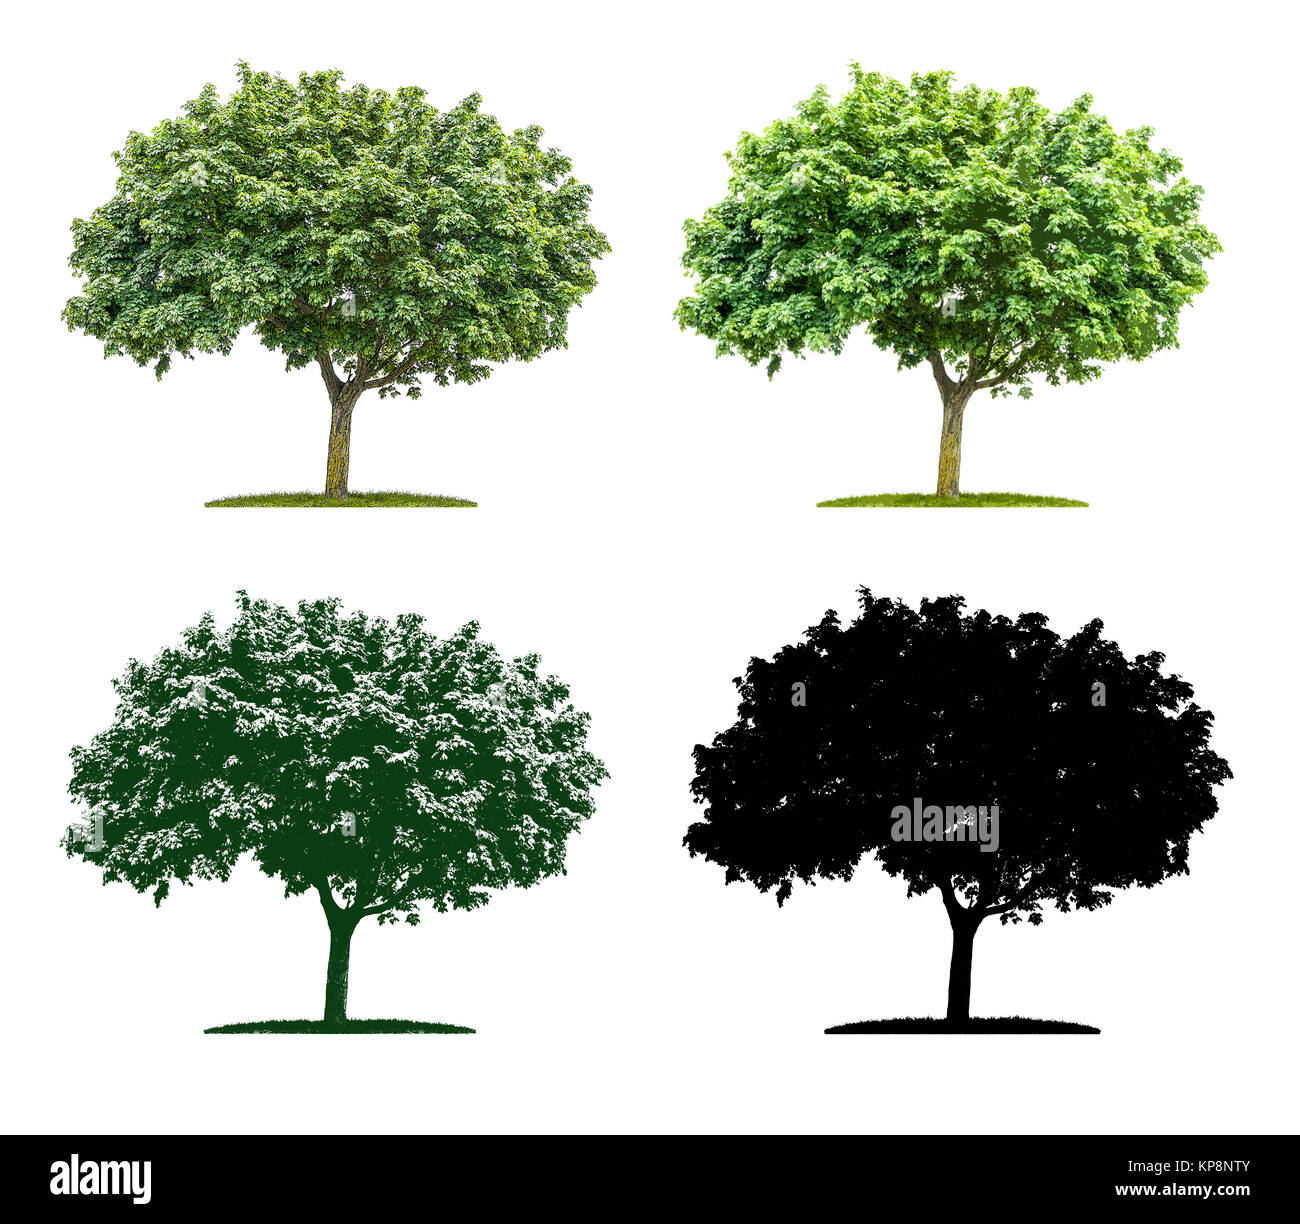 Baum in vier unterschiedlichen Illustrationstechniken - Ahorn Foto Stock